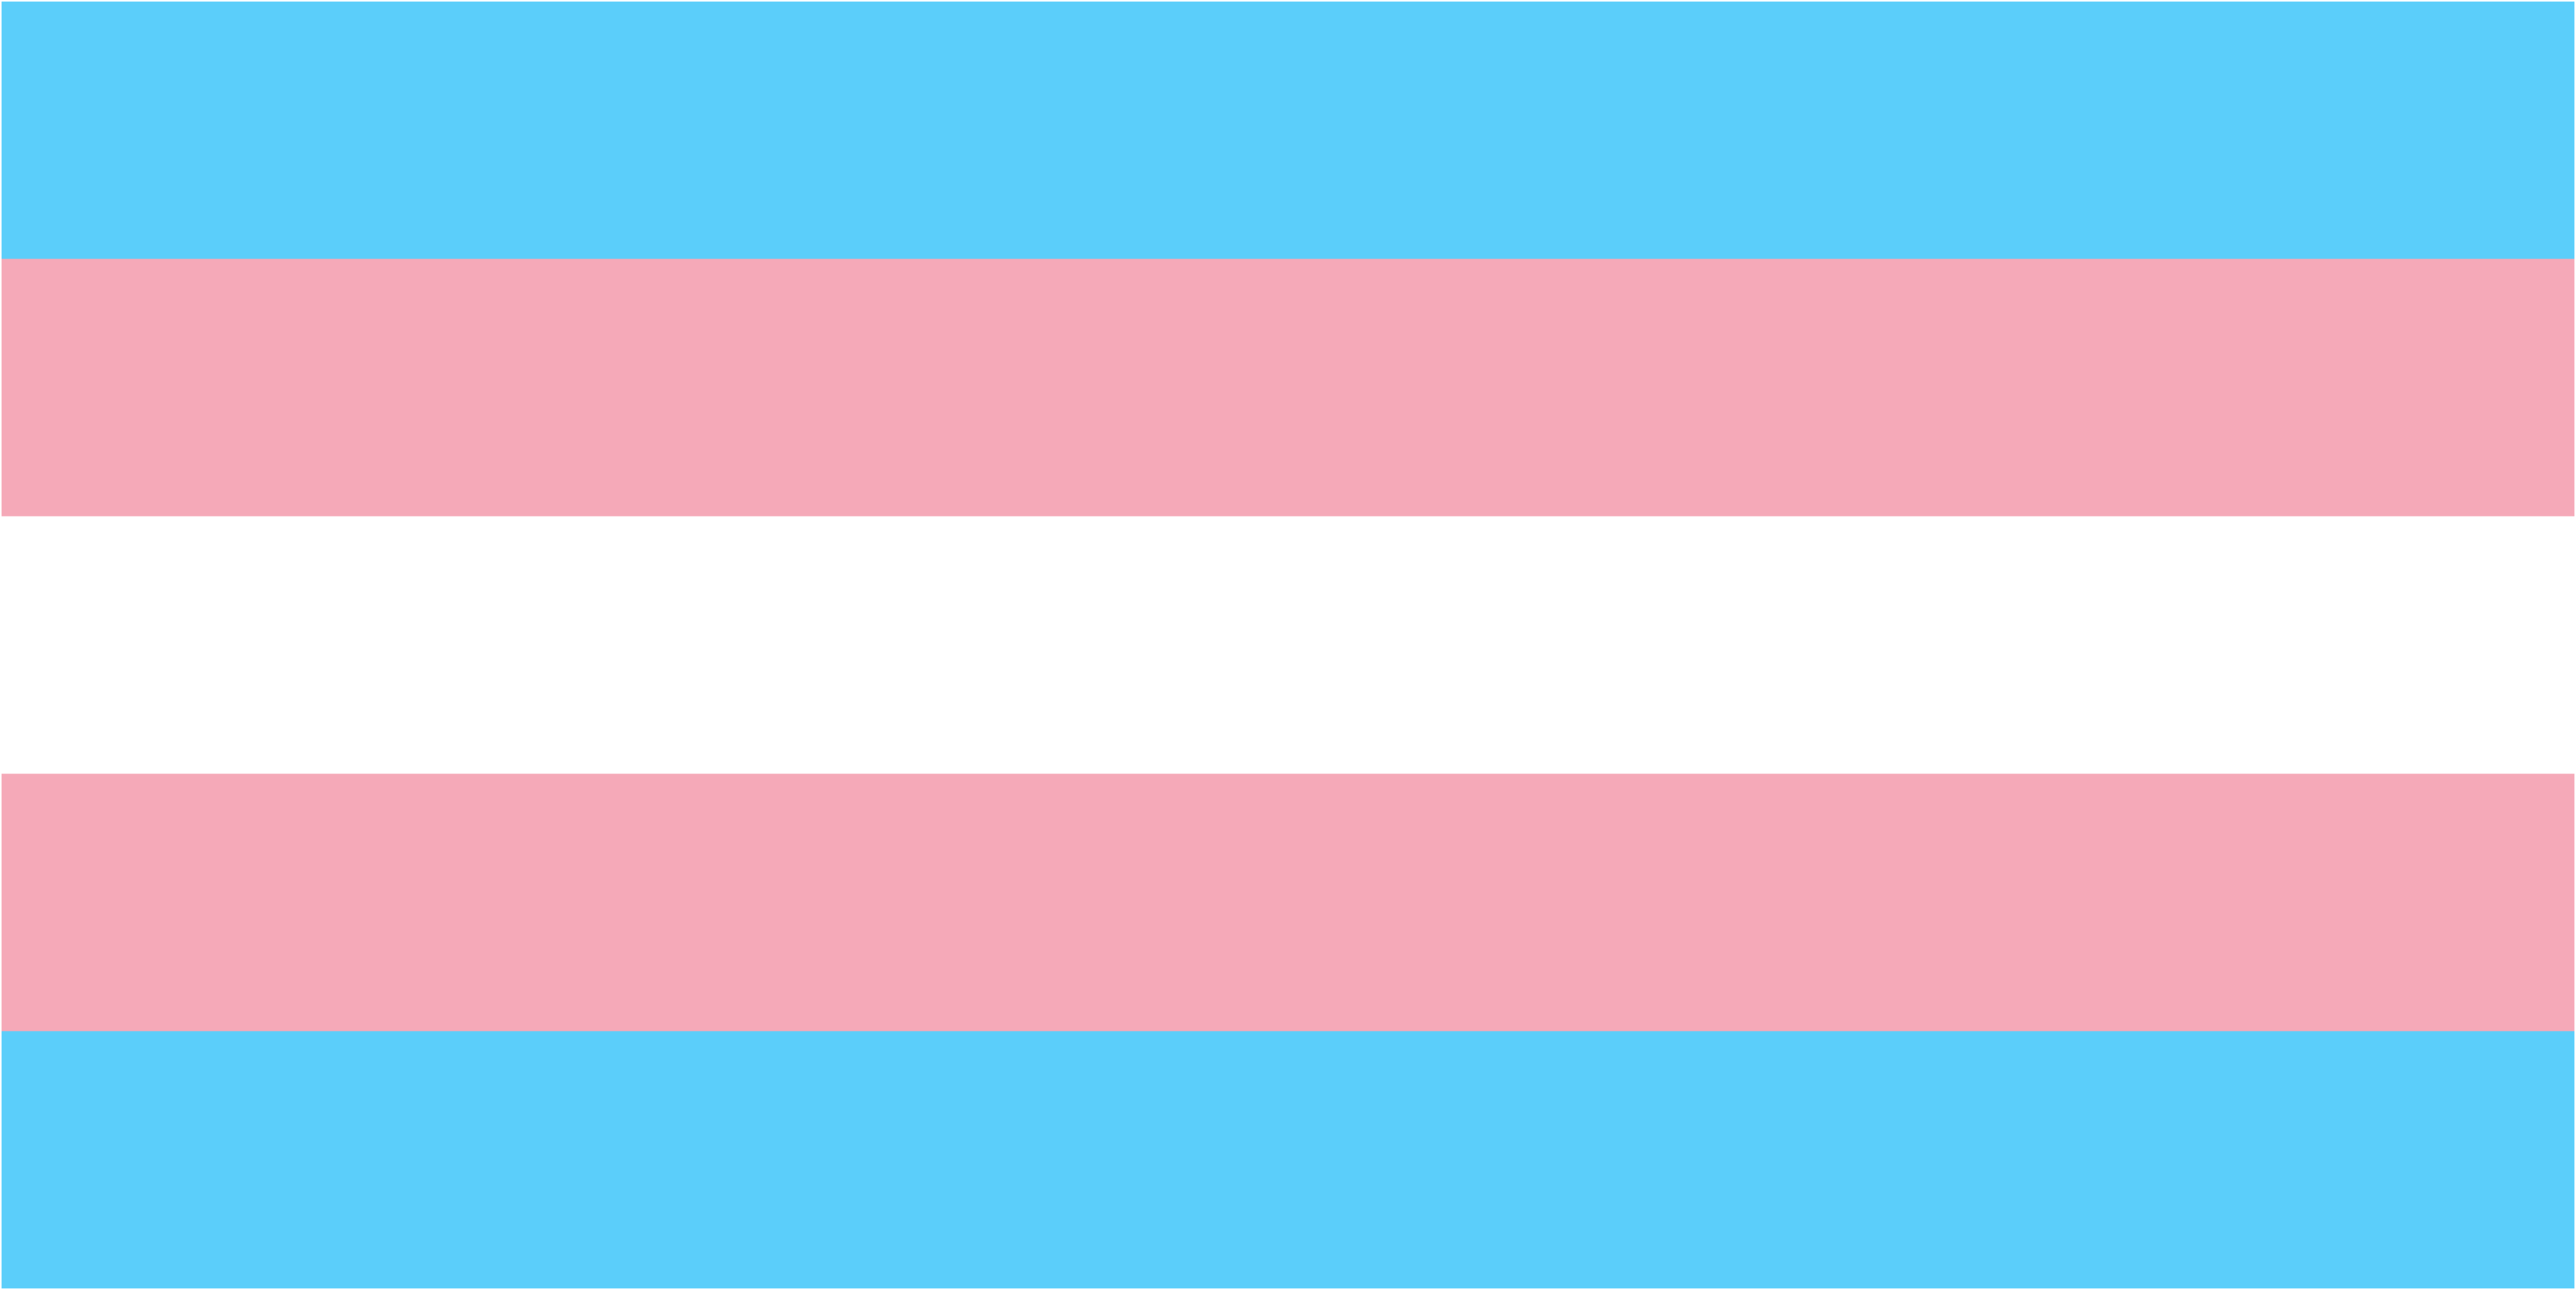 Blue, Pink, and White Transgender Flag